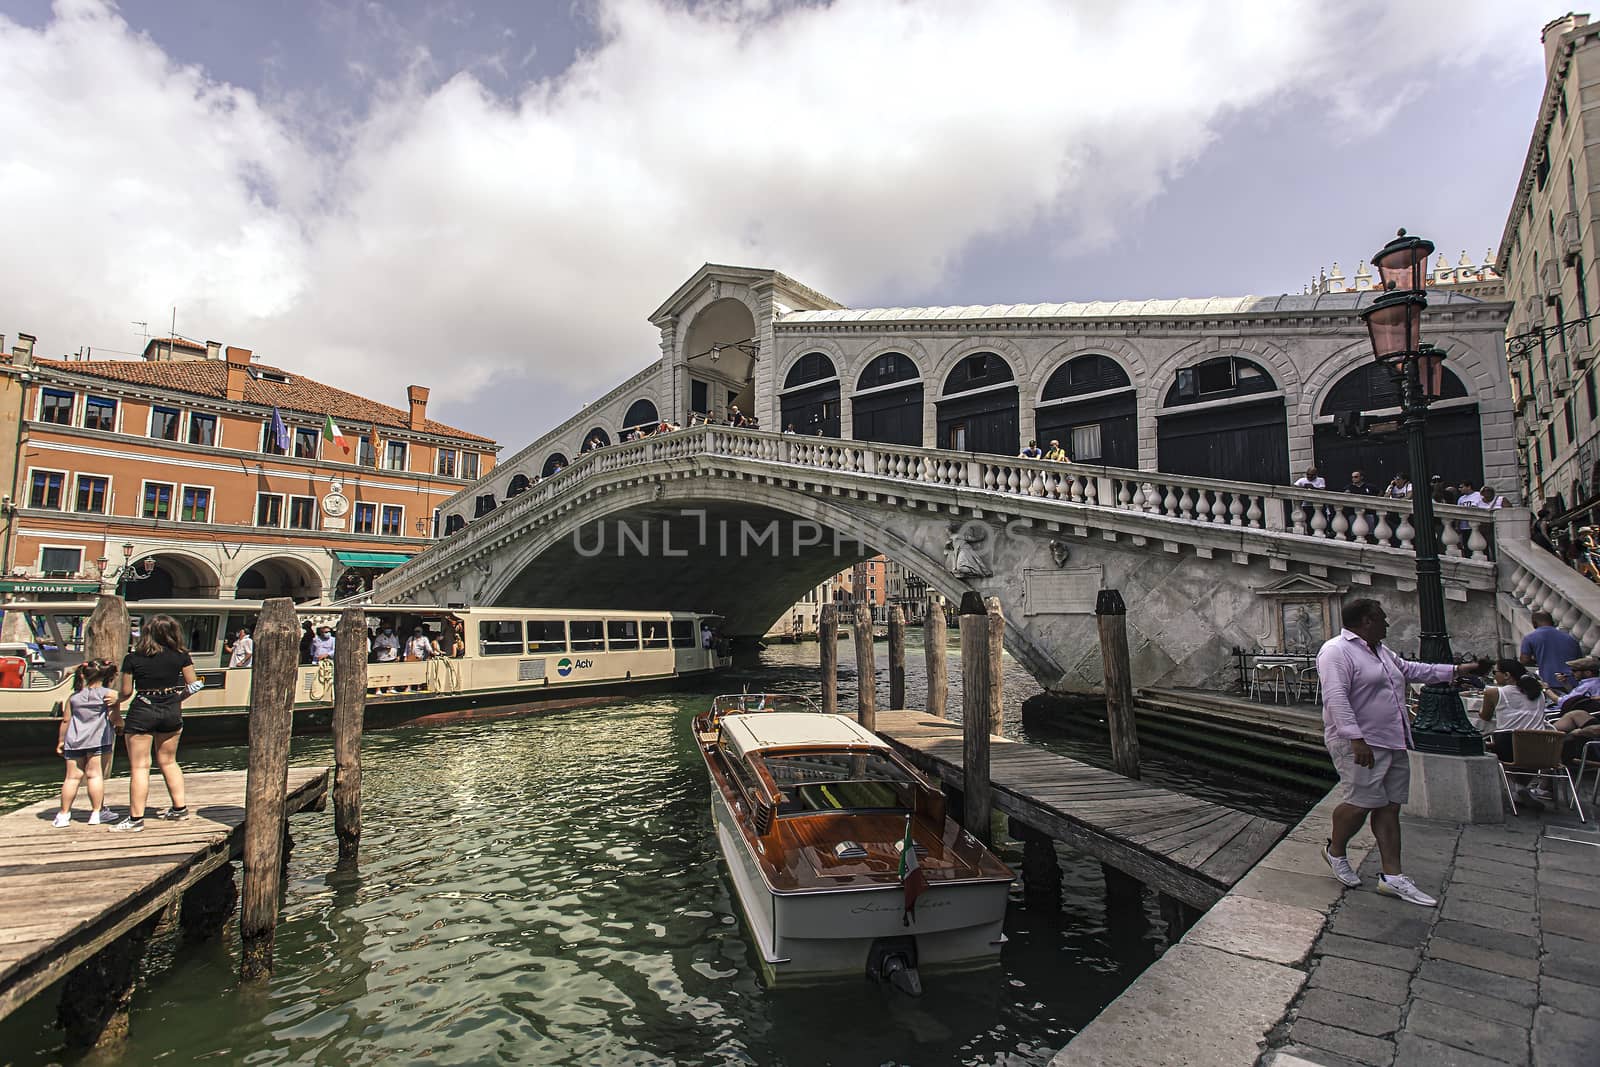 Three quarter view of the Rialto bridge in Venice 2 by pippocarlot